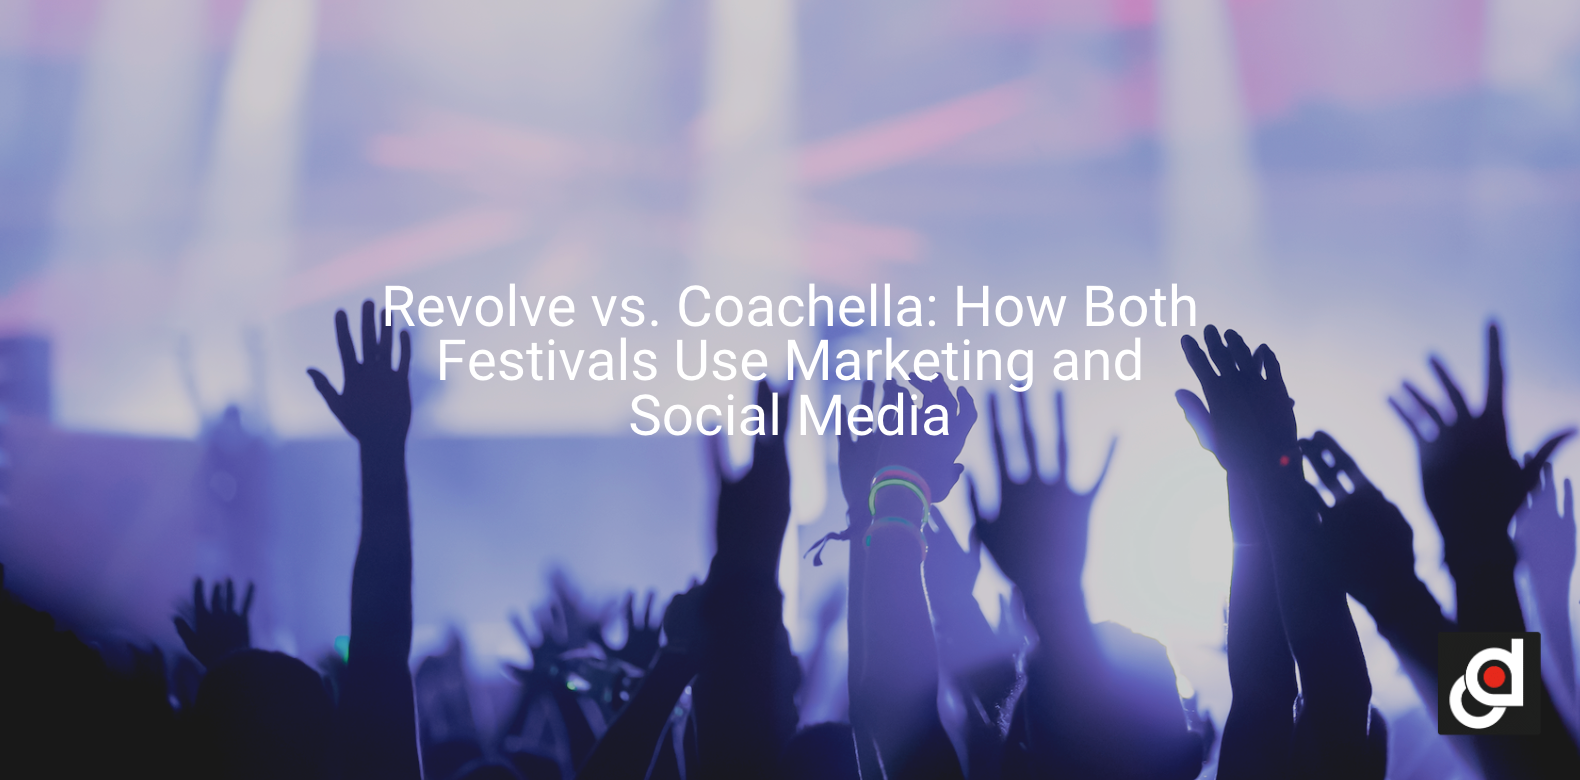 Revolve vs. Coachella: How Both Festivals Use Marketing and Social Media